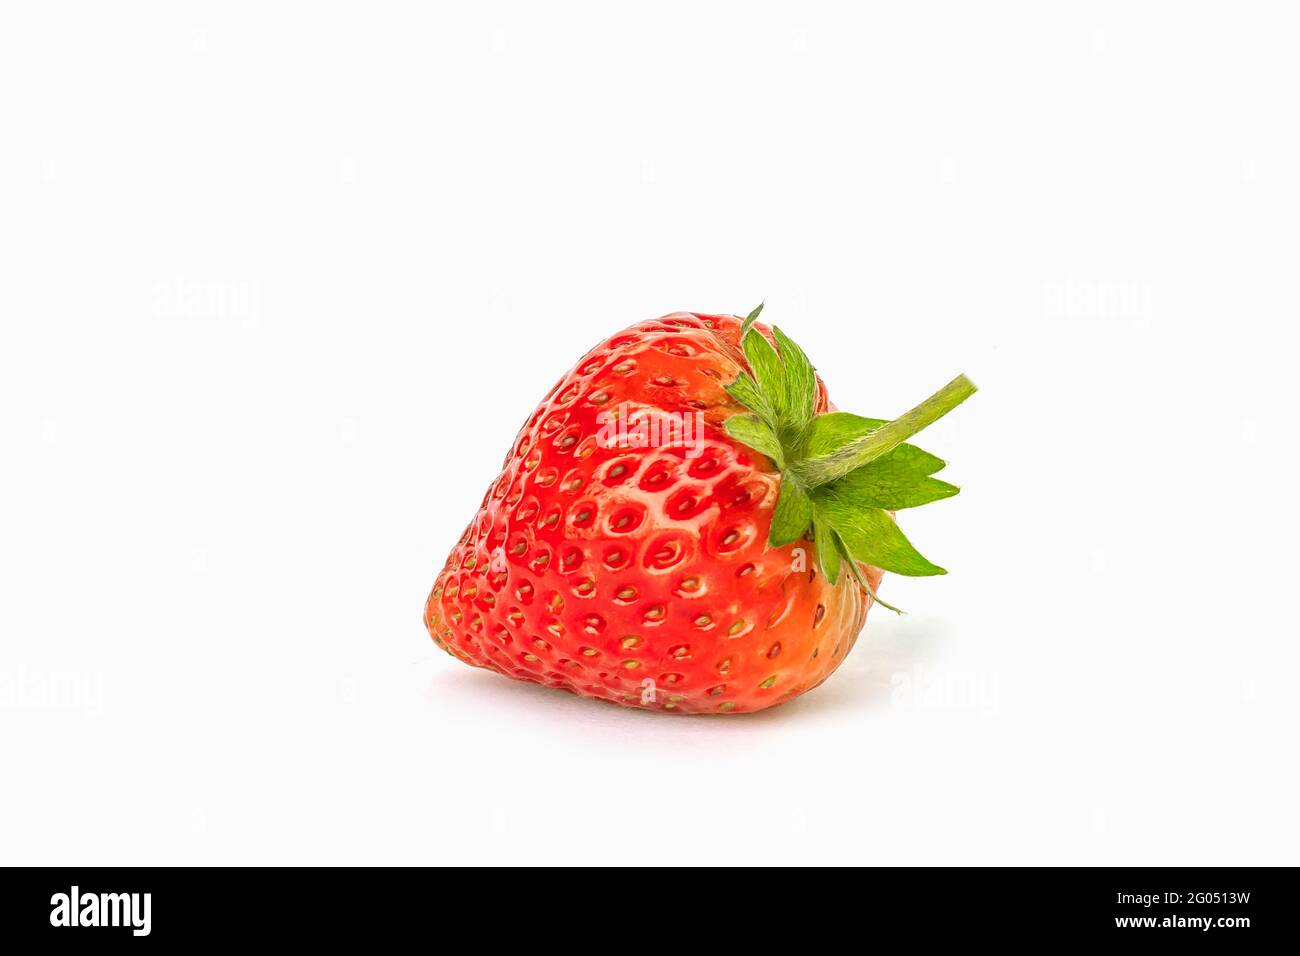 Fresh ripe juicy strawberry isolated on white background. Stock Photo